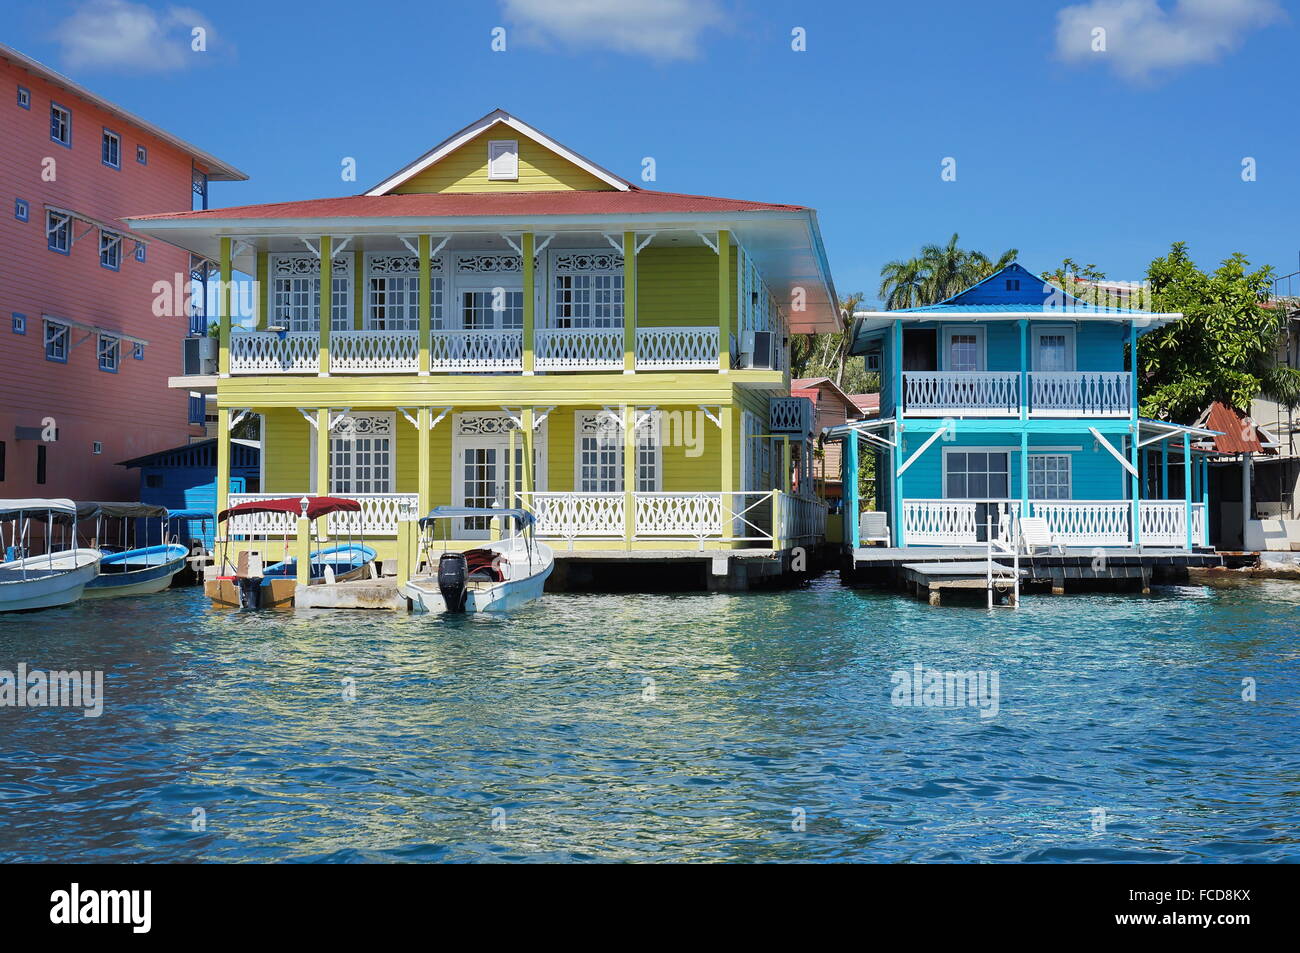 Típicas casas coloniales del Caribe sobre el agua con los barcos en el muelle, Panamá, América Central Foto de stock